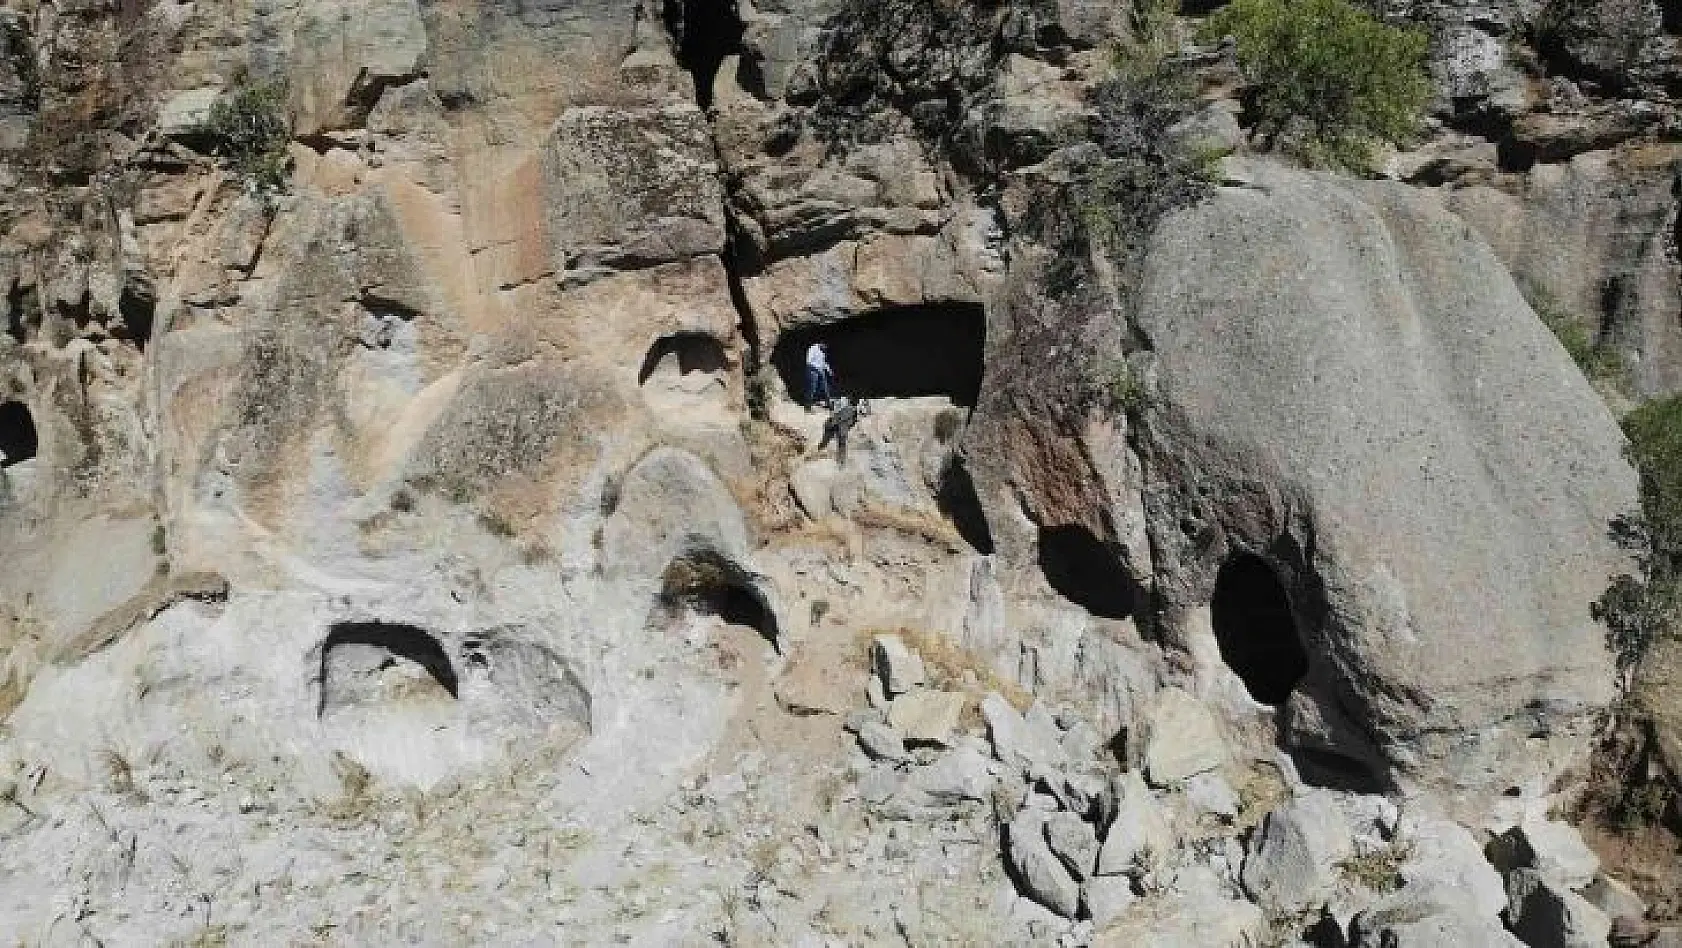 Bingöl'de 7 odalı kaya kilisesi keşfedildi